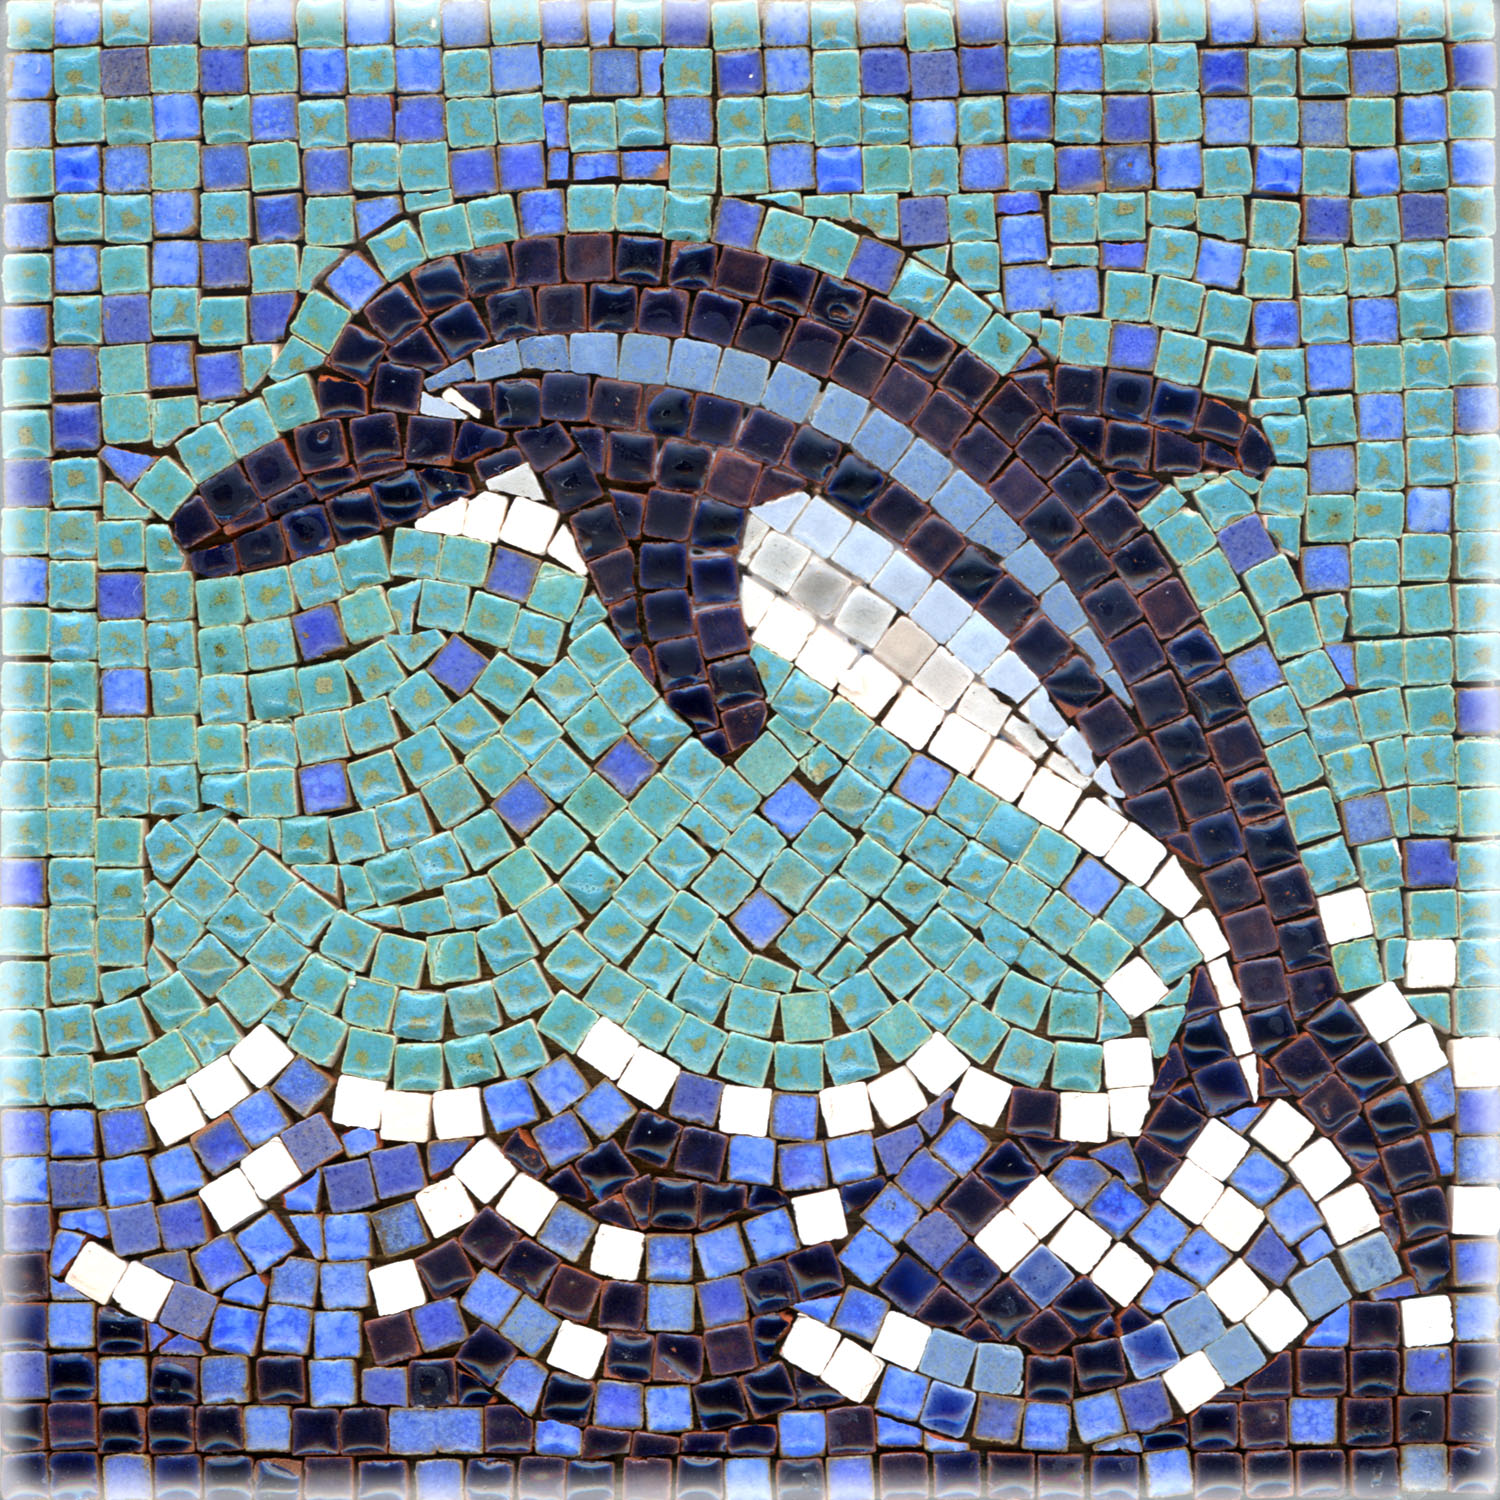 Мозаика кг. Римская мозаика Пеликан. Дельфин мозаика смальта. Древнегреческие мозаики Дельфин. Мозаика древнеримская Дельфин.